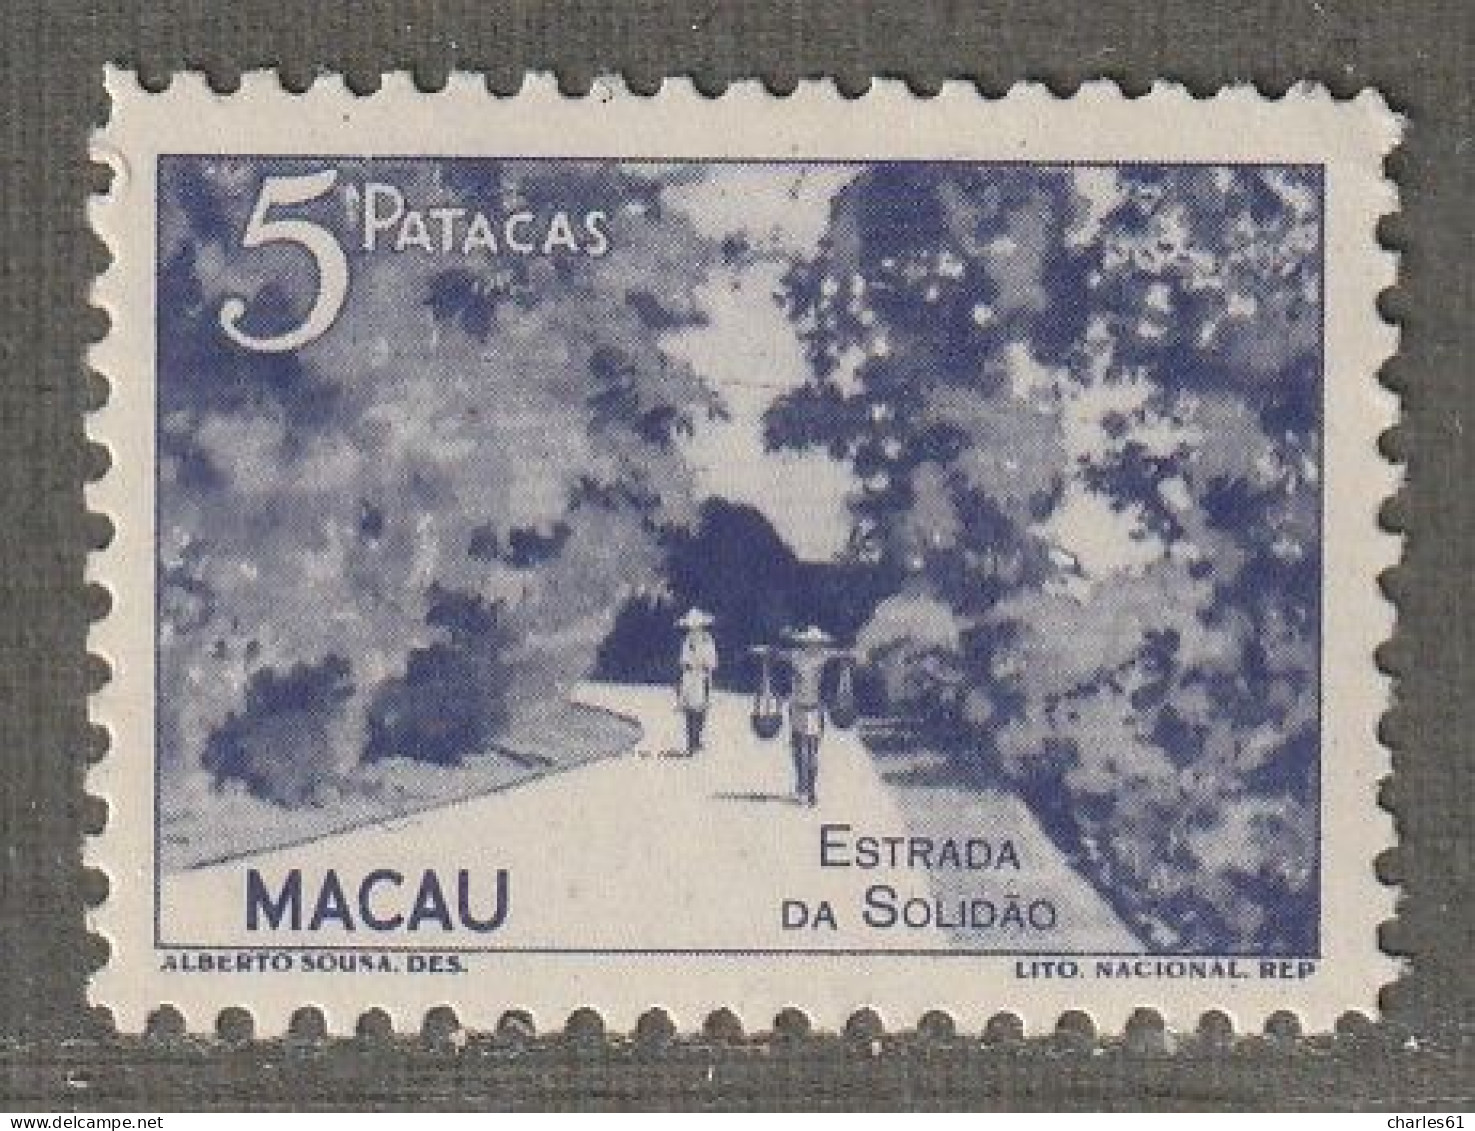 MACAO - N°335 ** (1948-51) Vue De La Colonie : 5p Violet - Ungebraucht